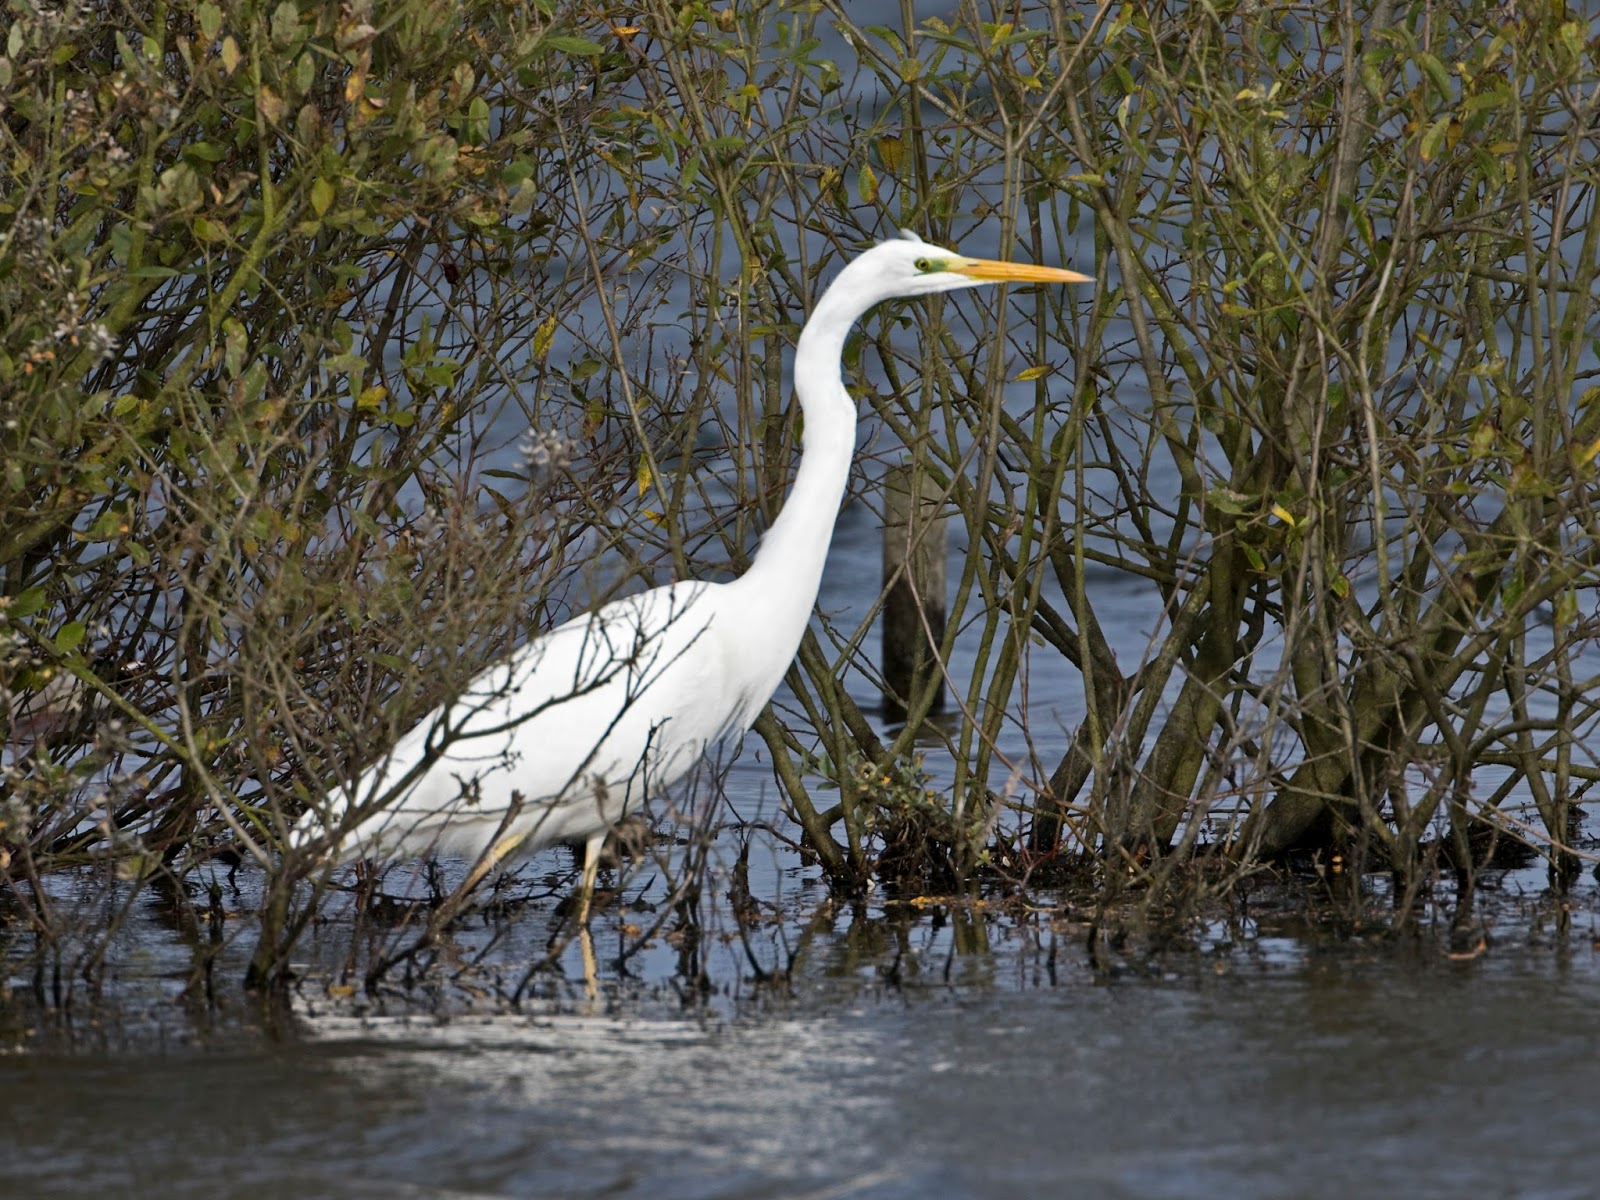 Martin's Sussex Birding Blog: Great White Egret